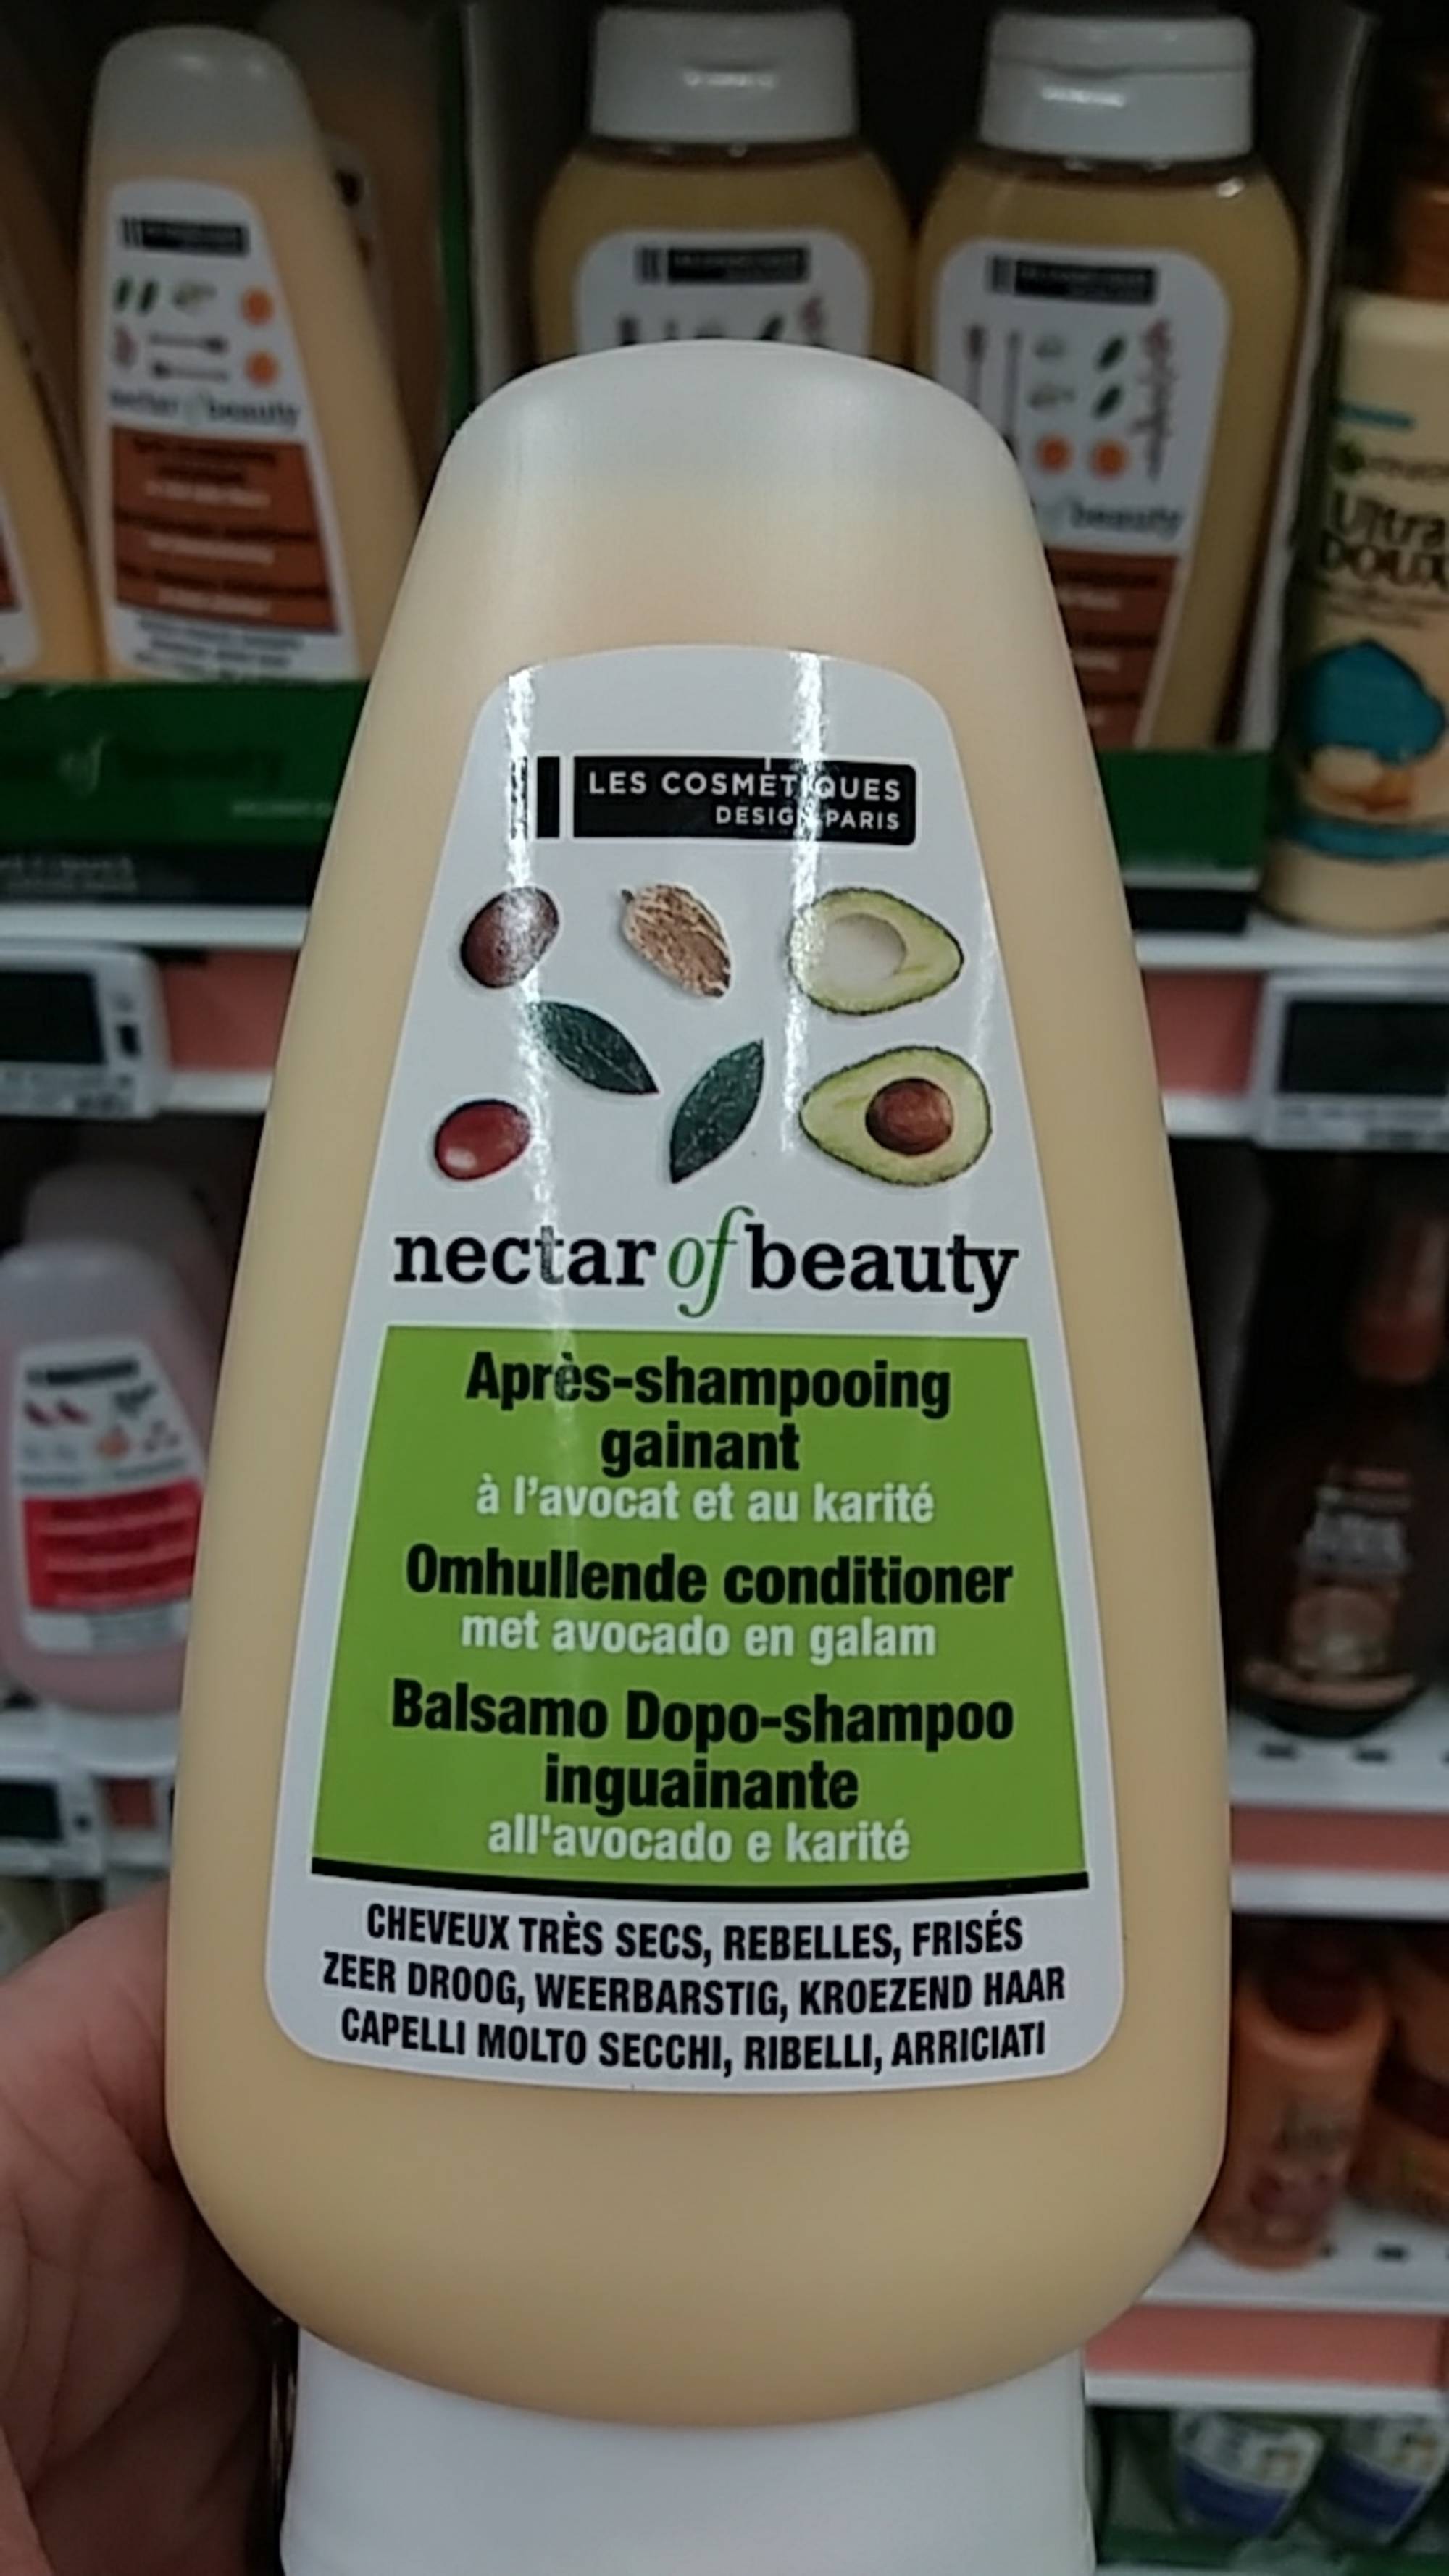 LES COSMÉTIQUES DESIGN PARIS - Nectar of beauty - Après-shampooing